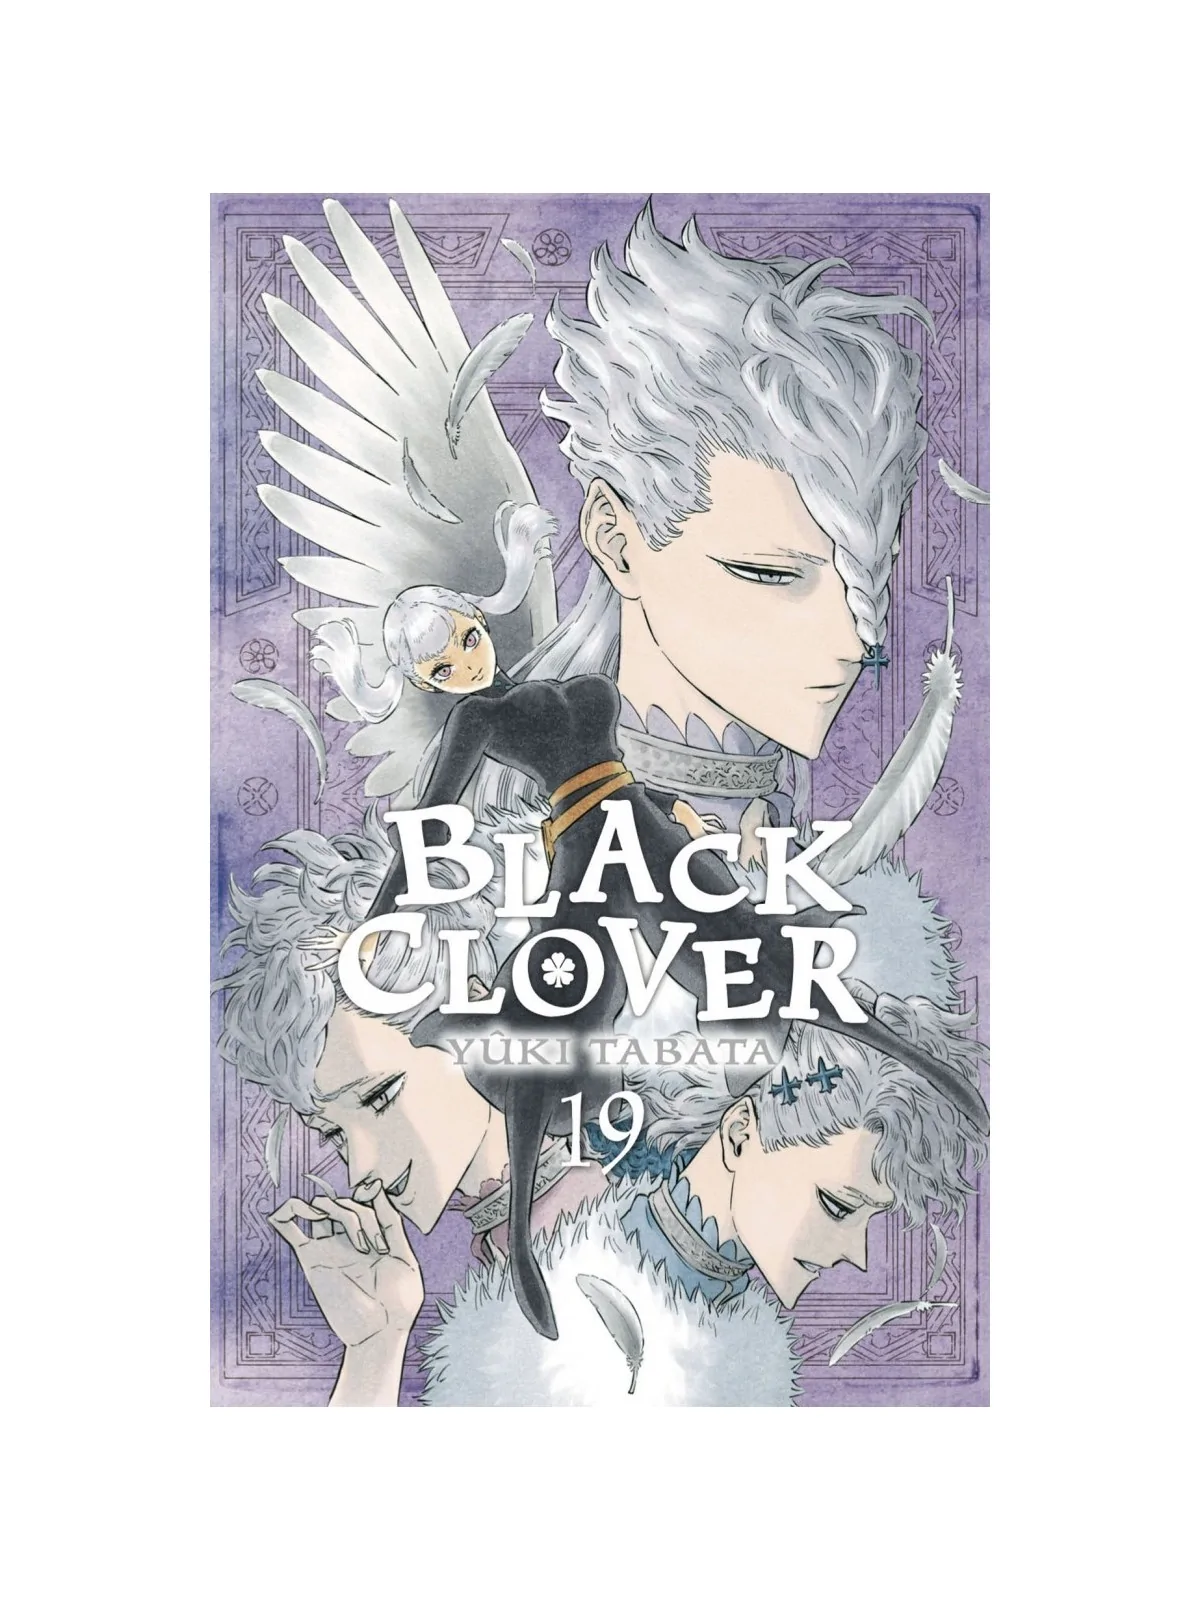 Comprar Black Clover 19 barato al mejor precio 8,55 € de Norma Editori